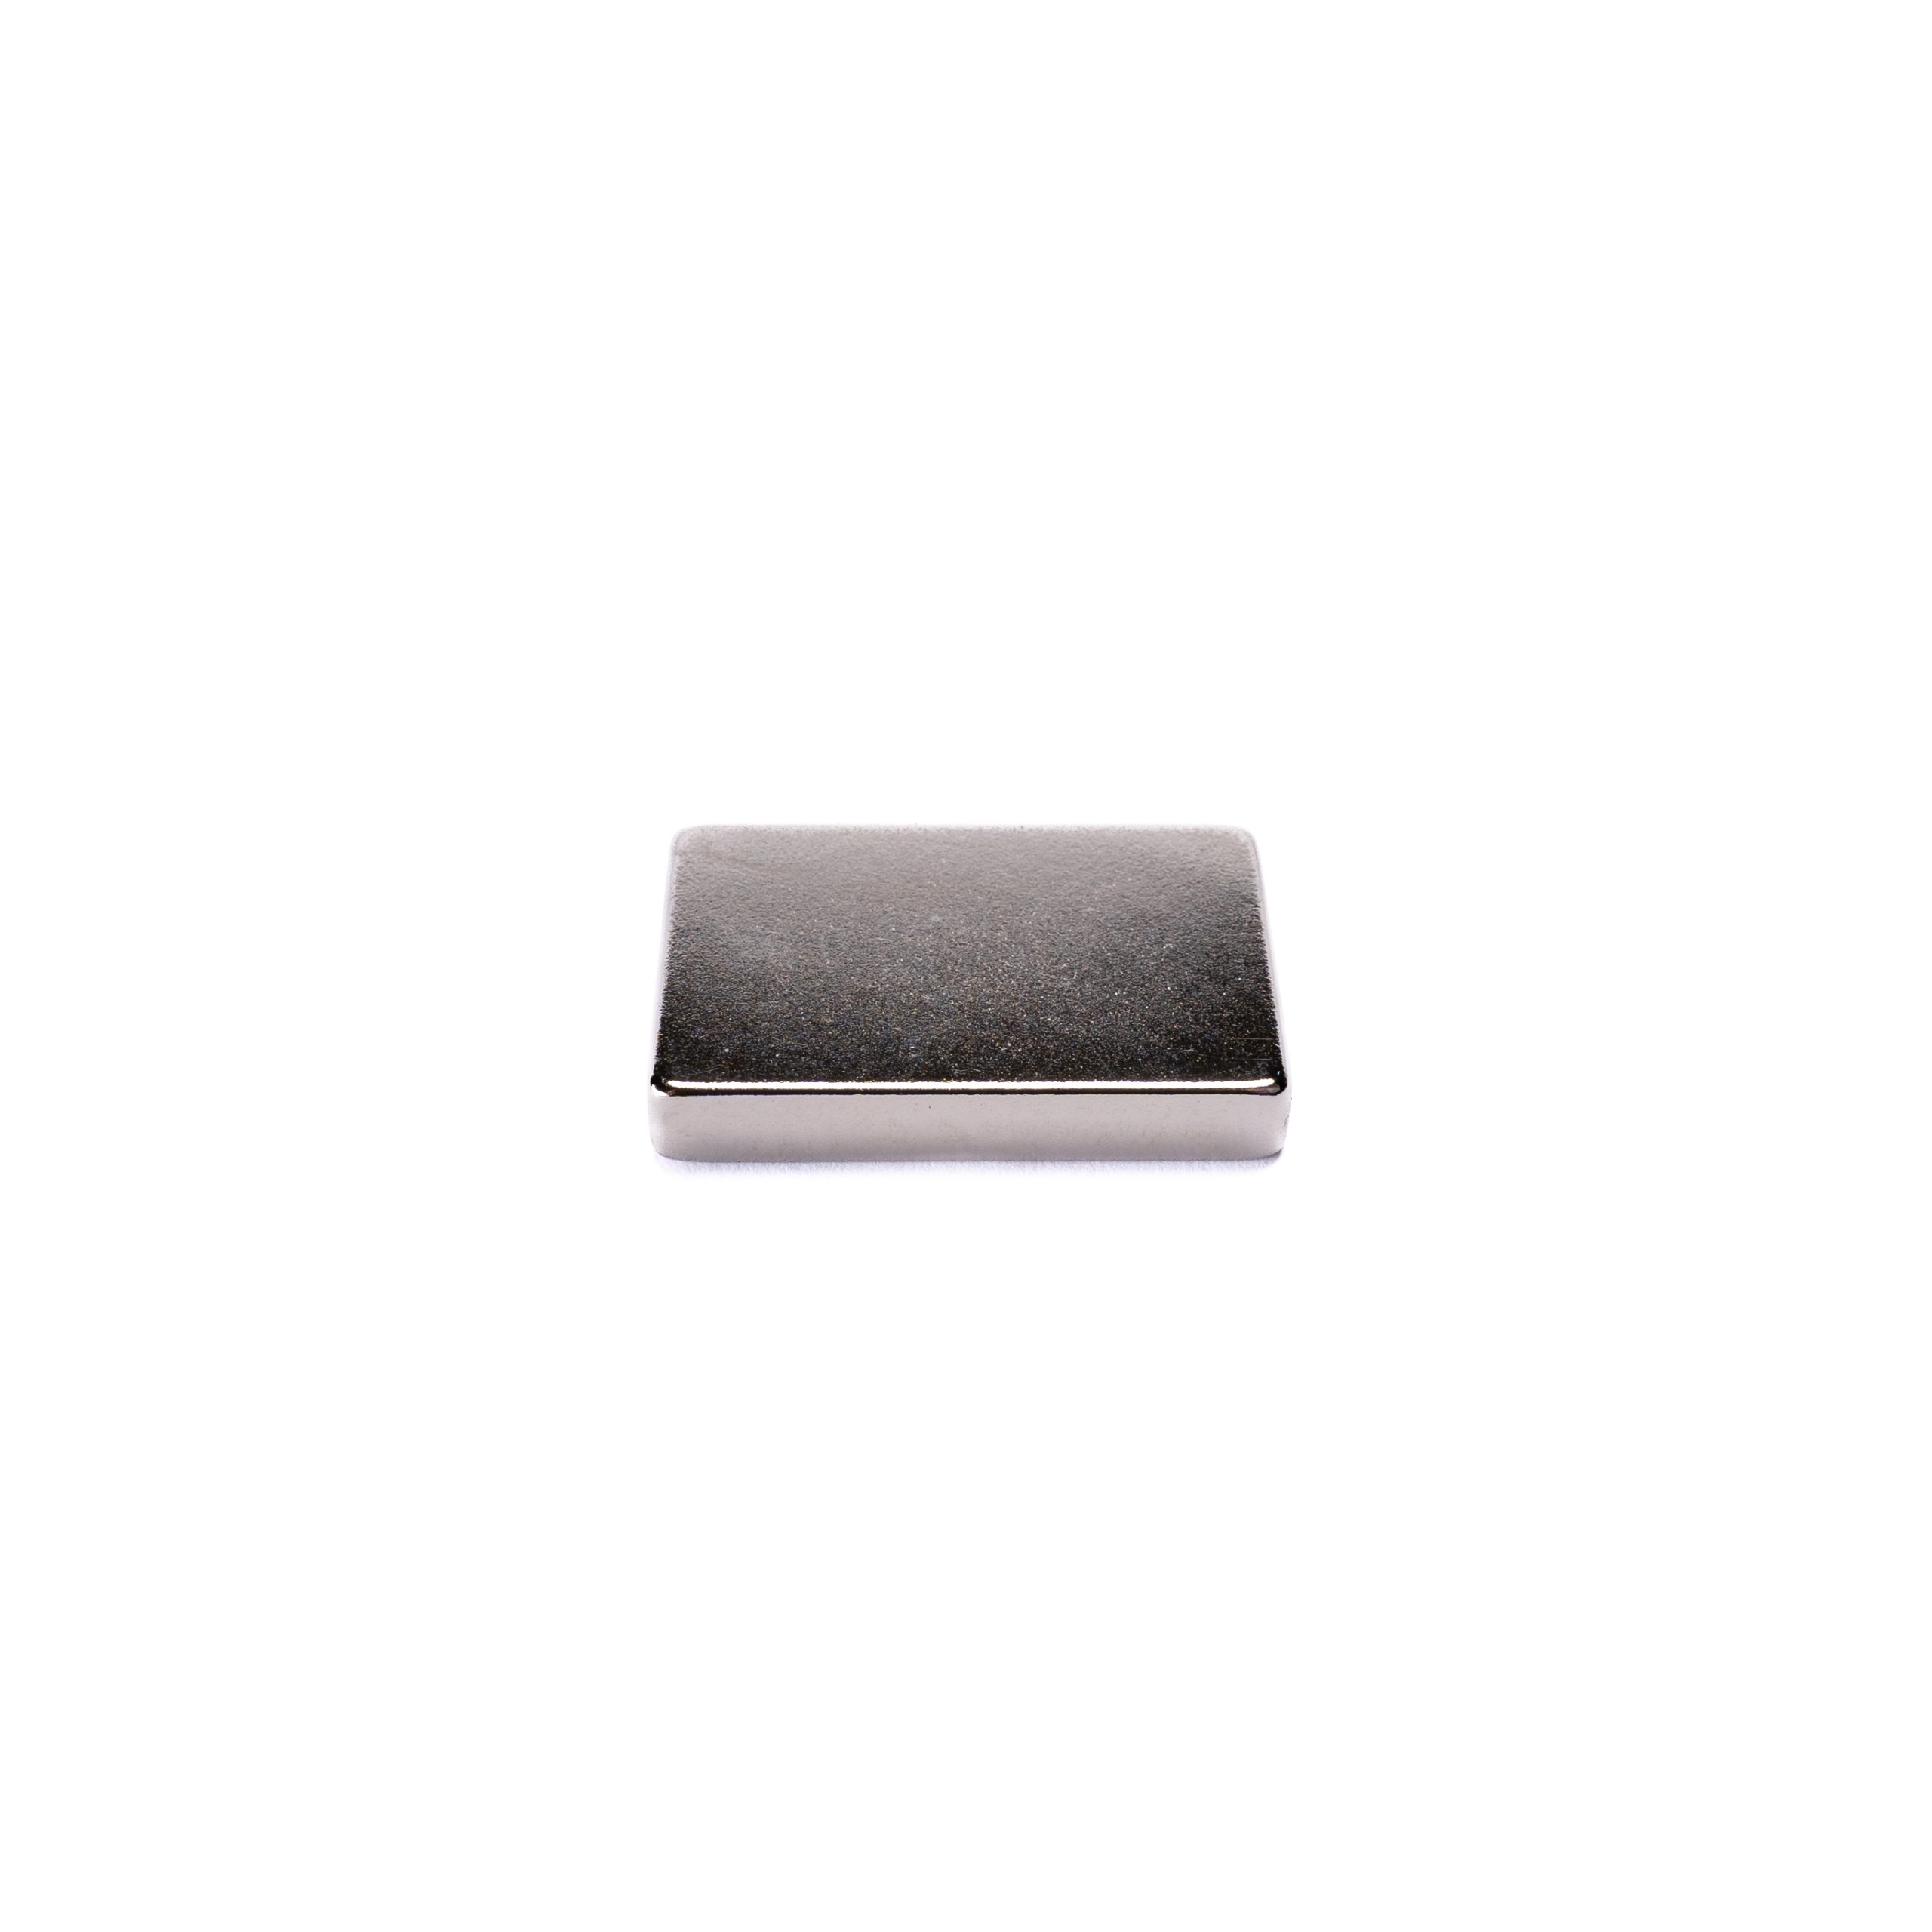 Neodímium téglatest mágnes 15x10x5mm